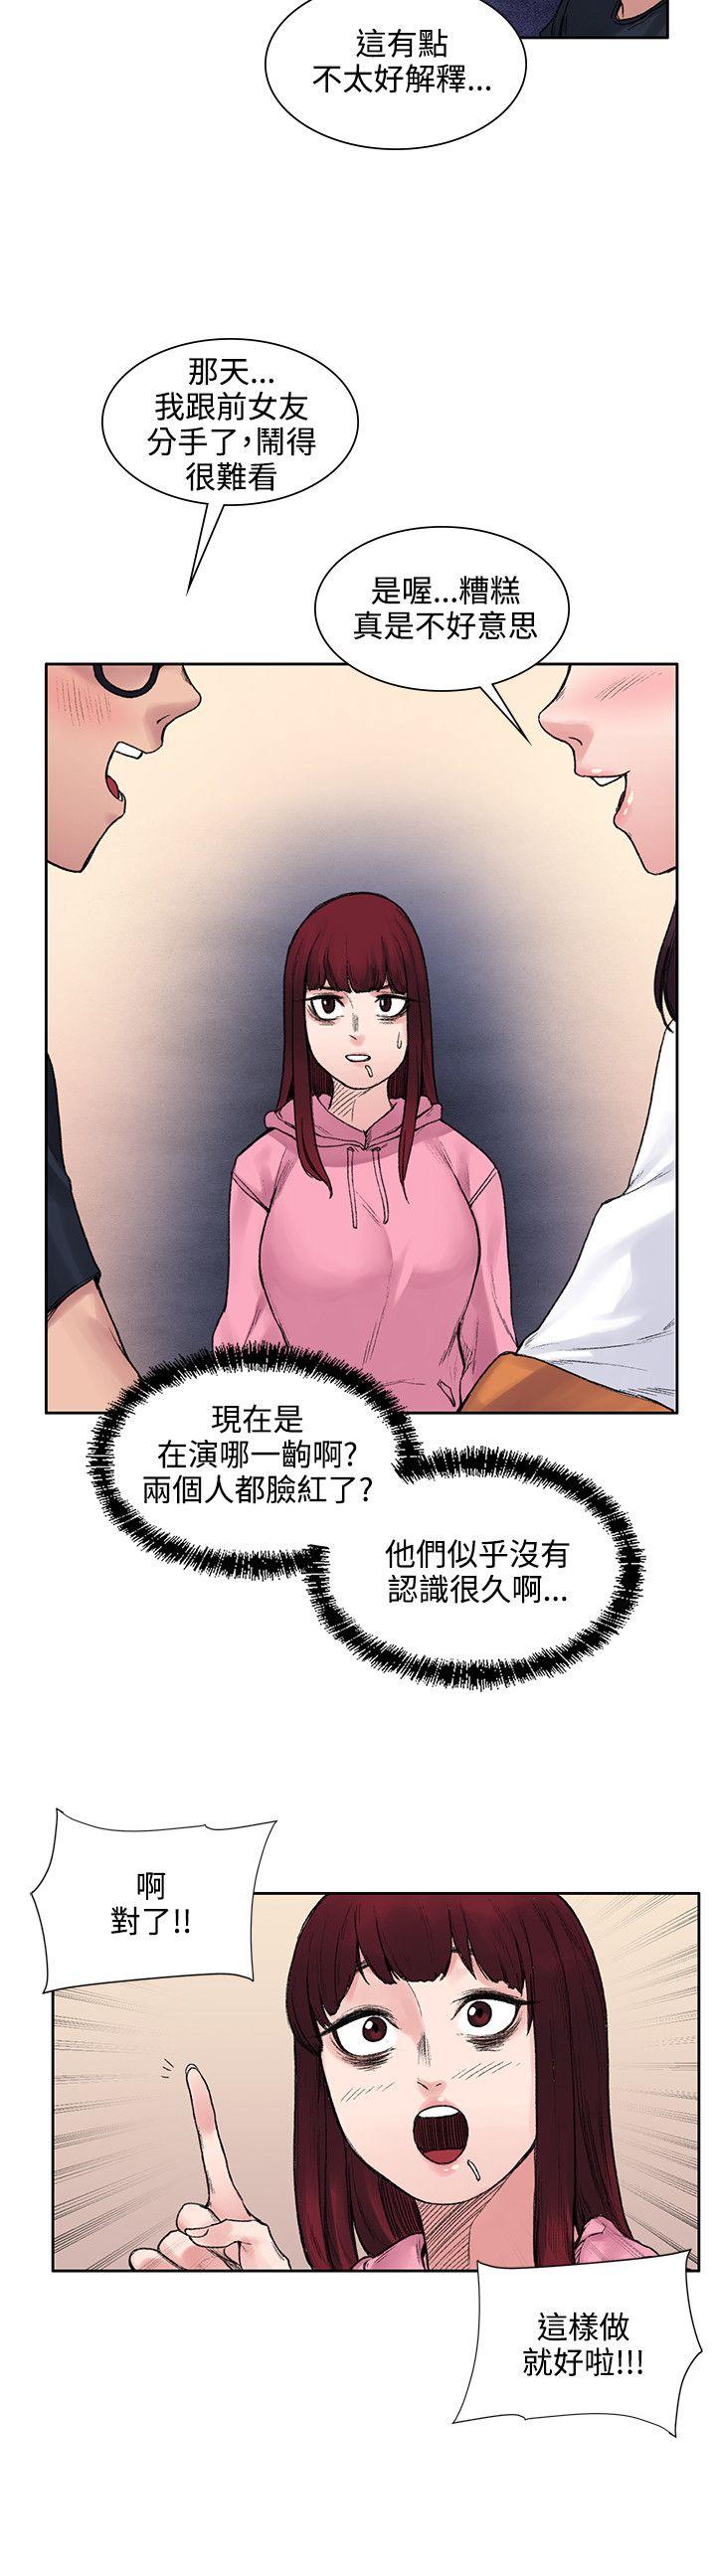 韩国污漫画 那裡的香氣 第12话 10